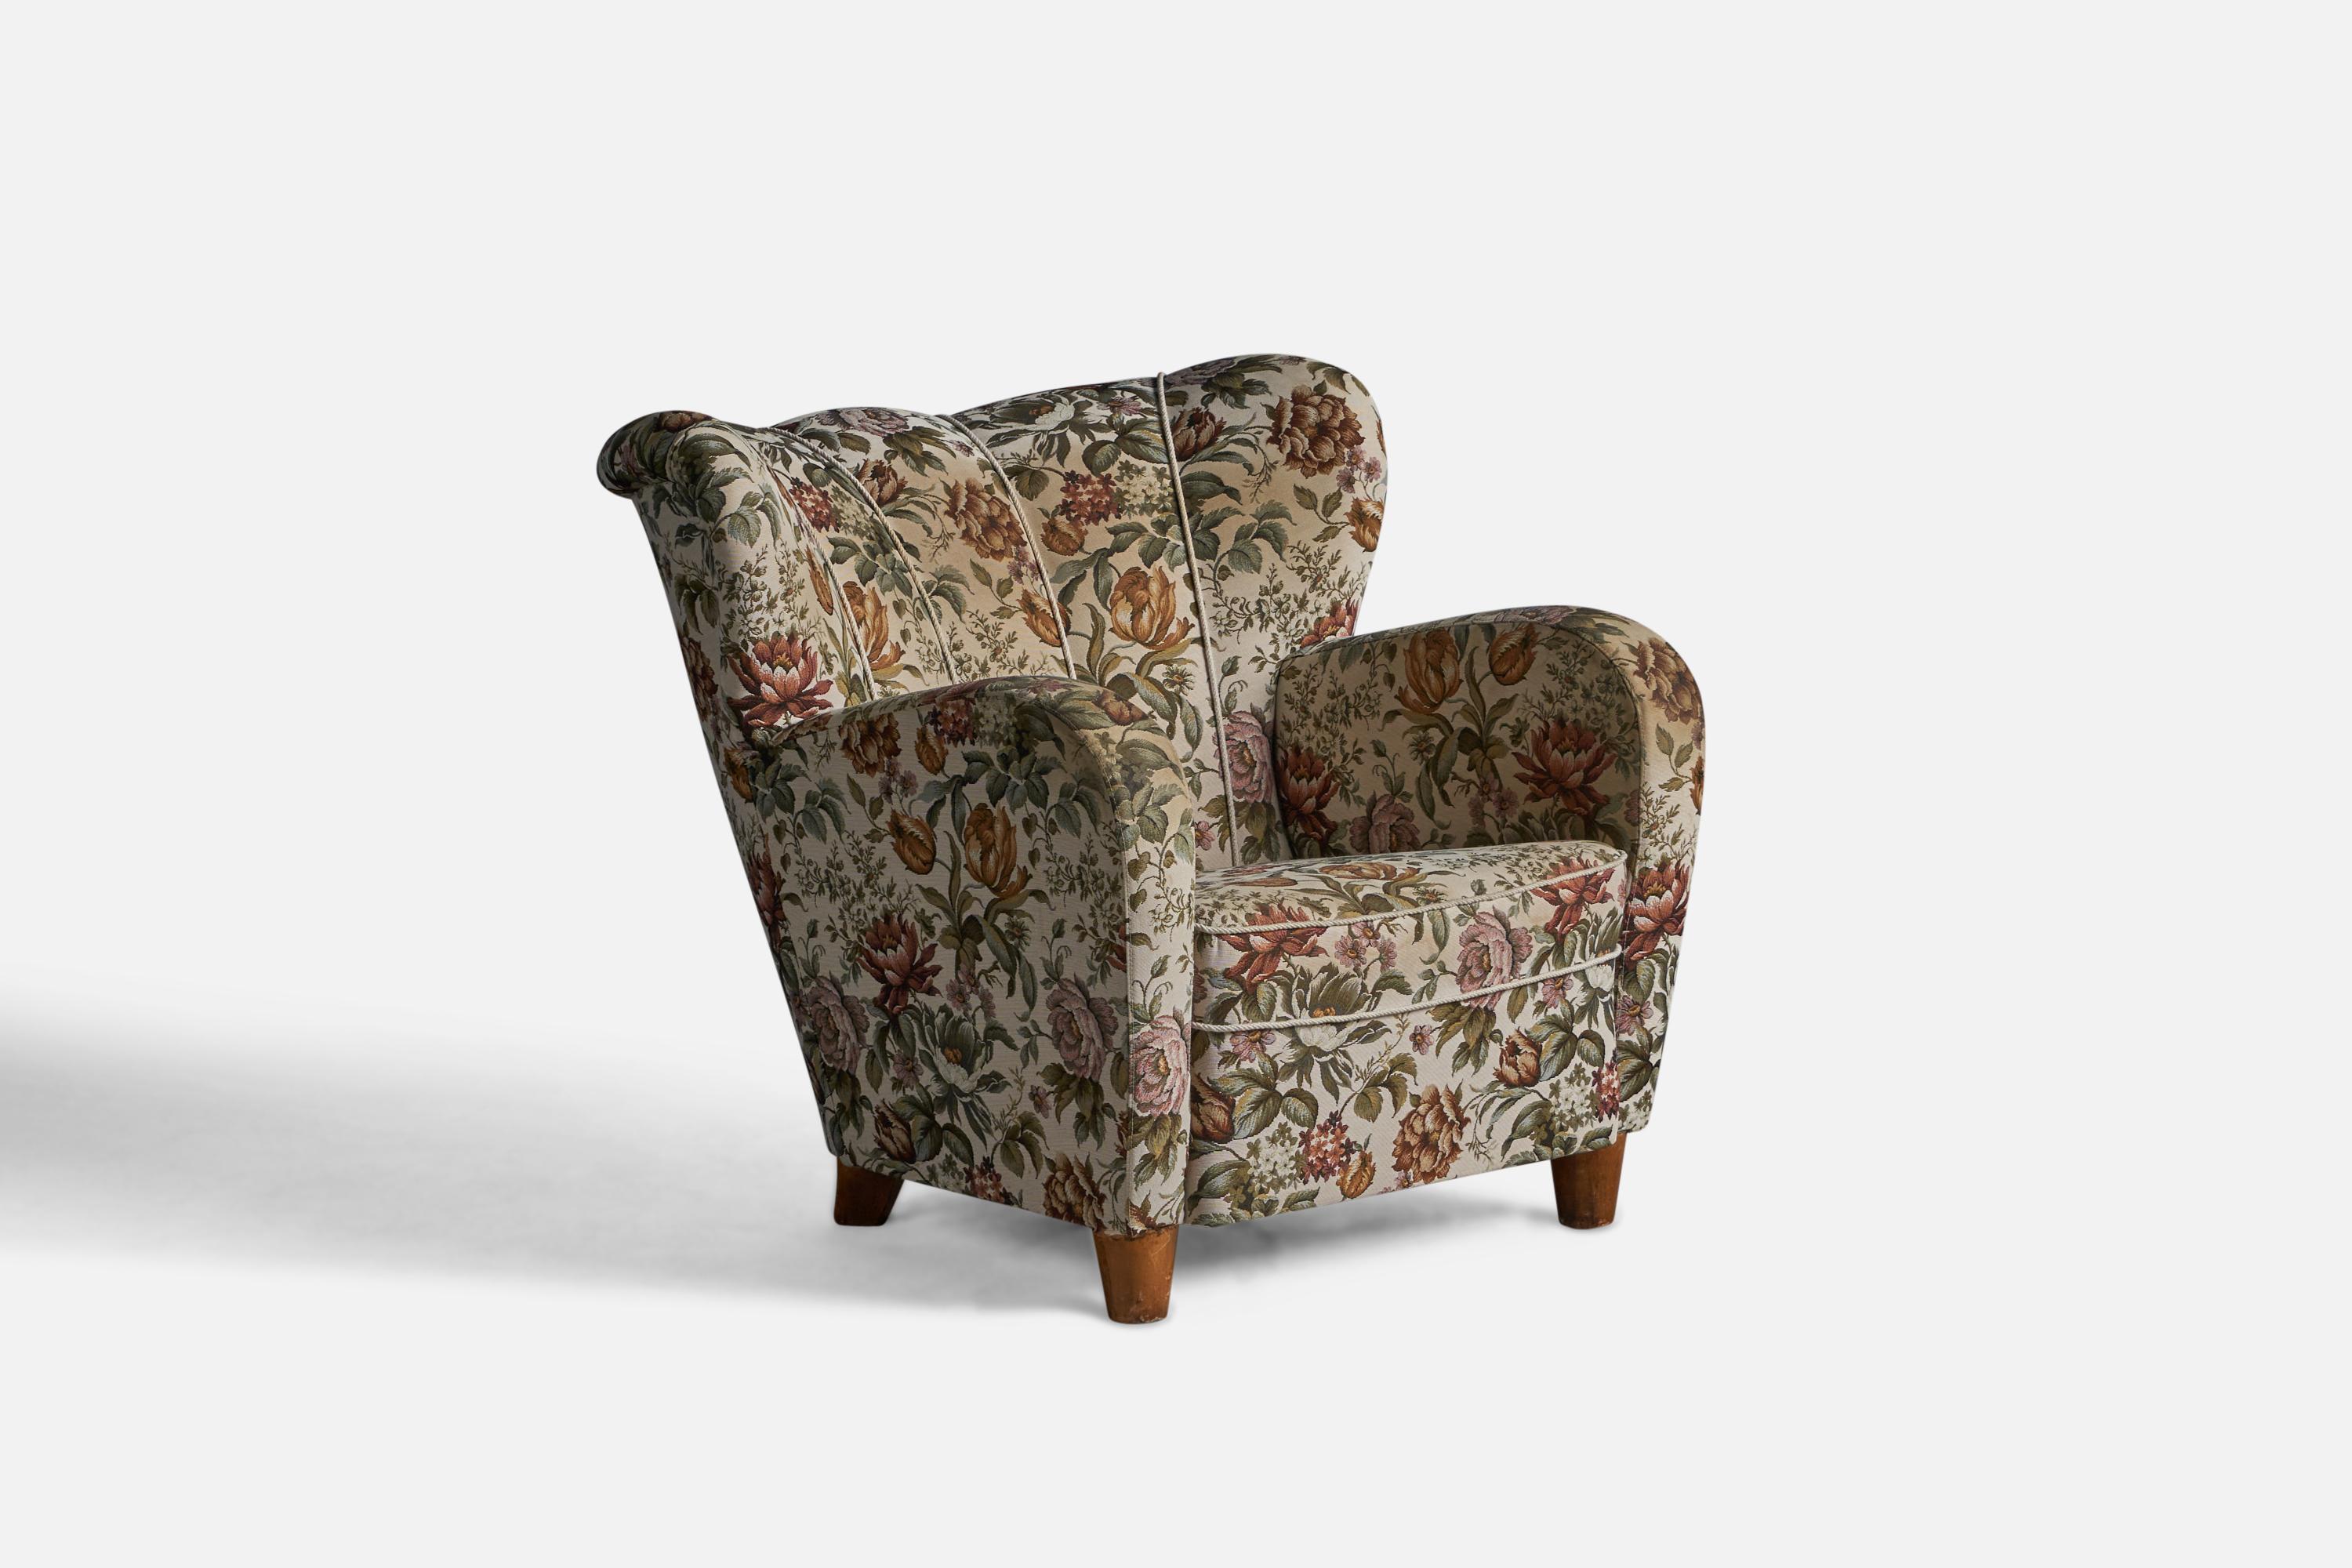 Chaise de salon en tissu imprimé floral et en bois teinté, conçue et fabriquée en Finlande dans les années 1940.
Hauteur d'assise de 14,5 pouces